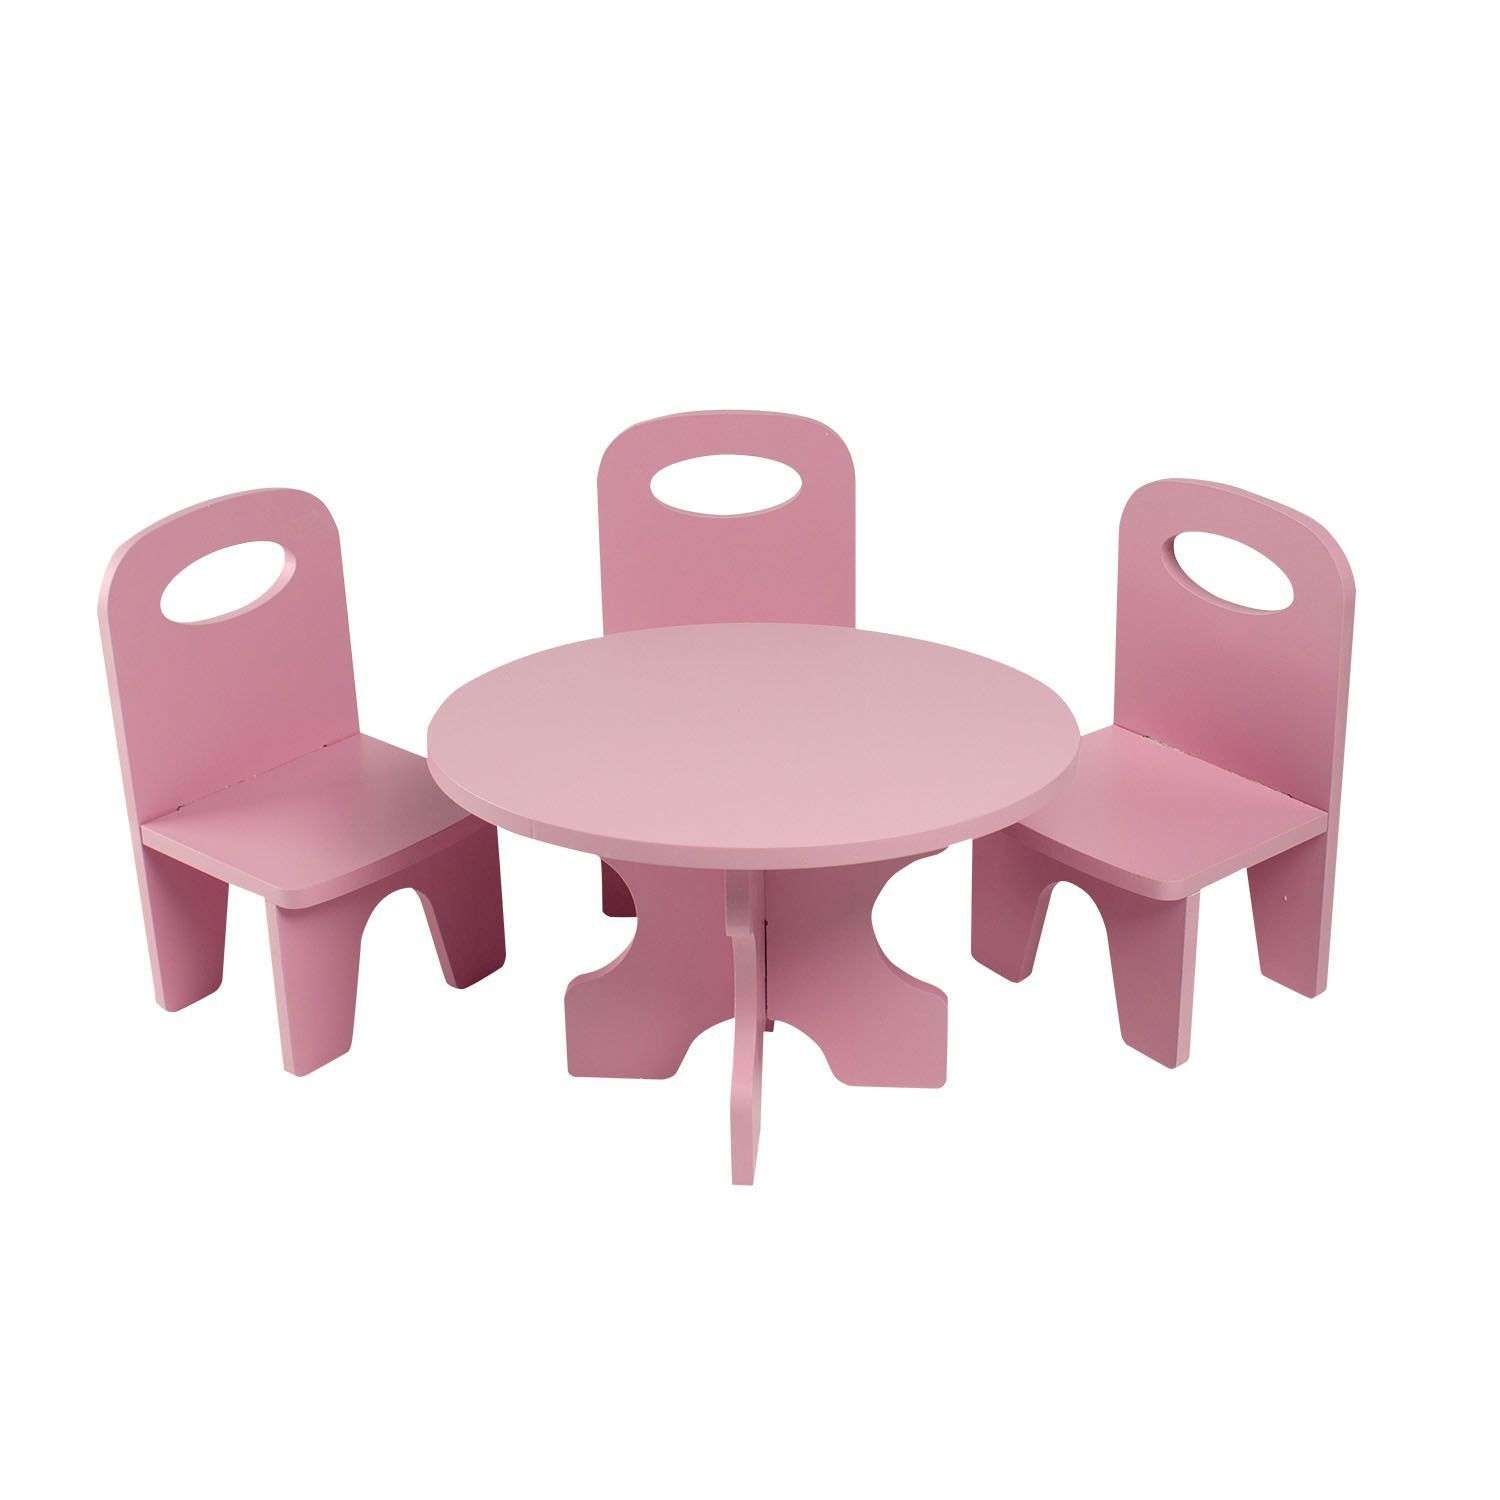 Мебель для кукол Paremo Классика набор 4предмета Розовый PFD120-38 PFD120-38 - фото 1